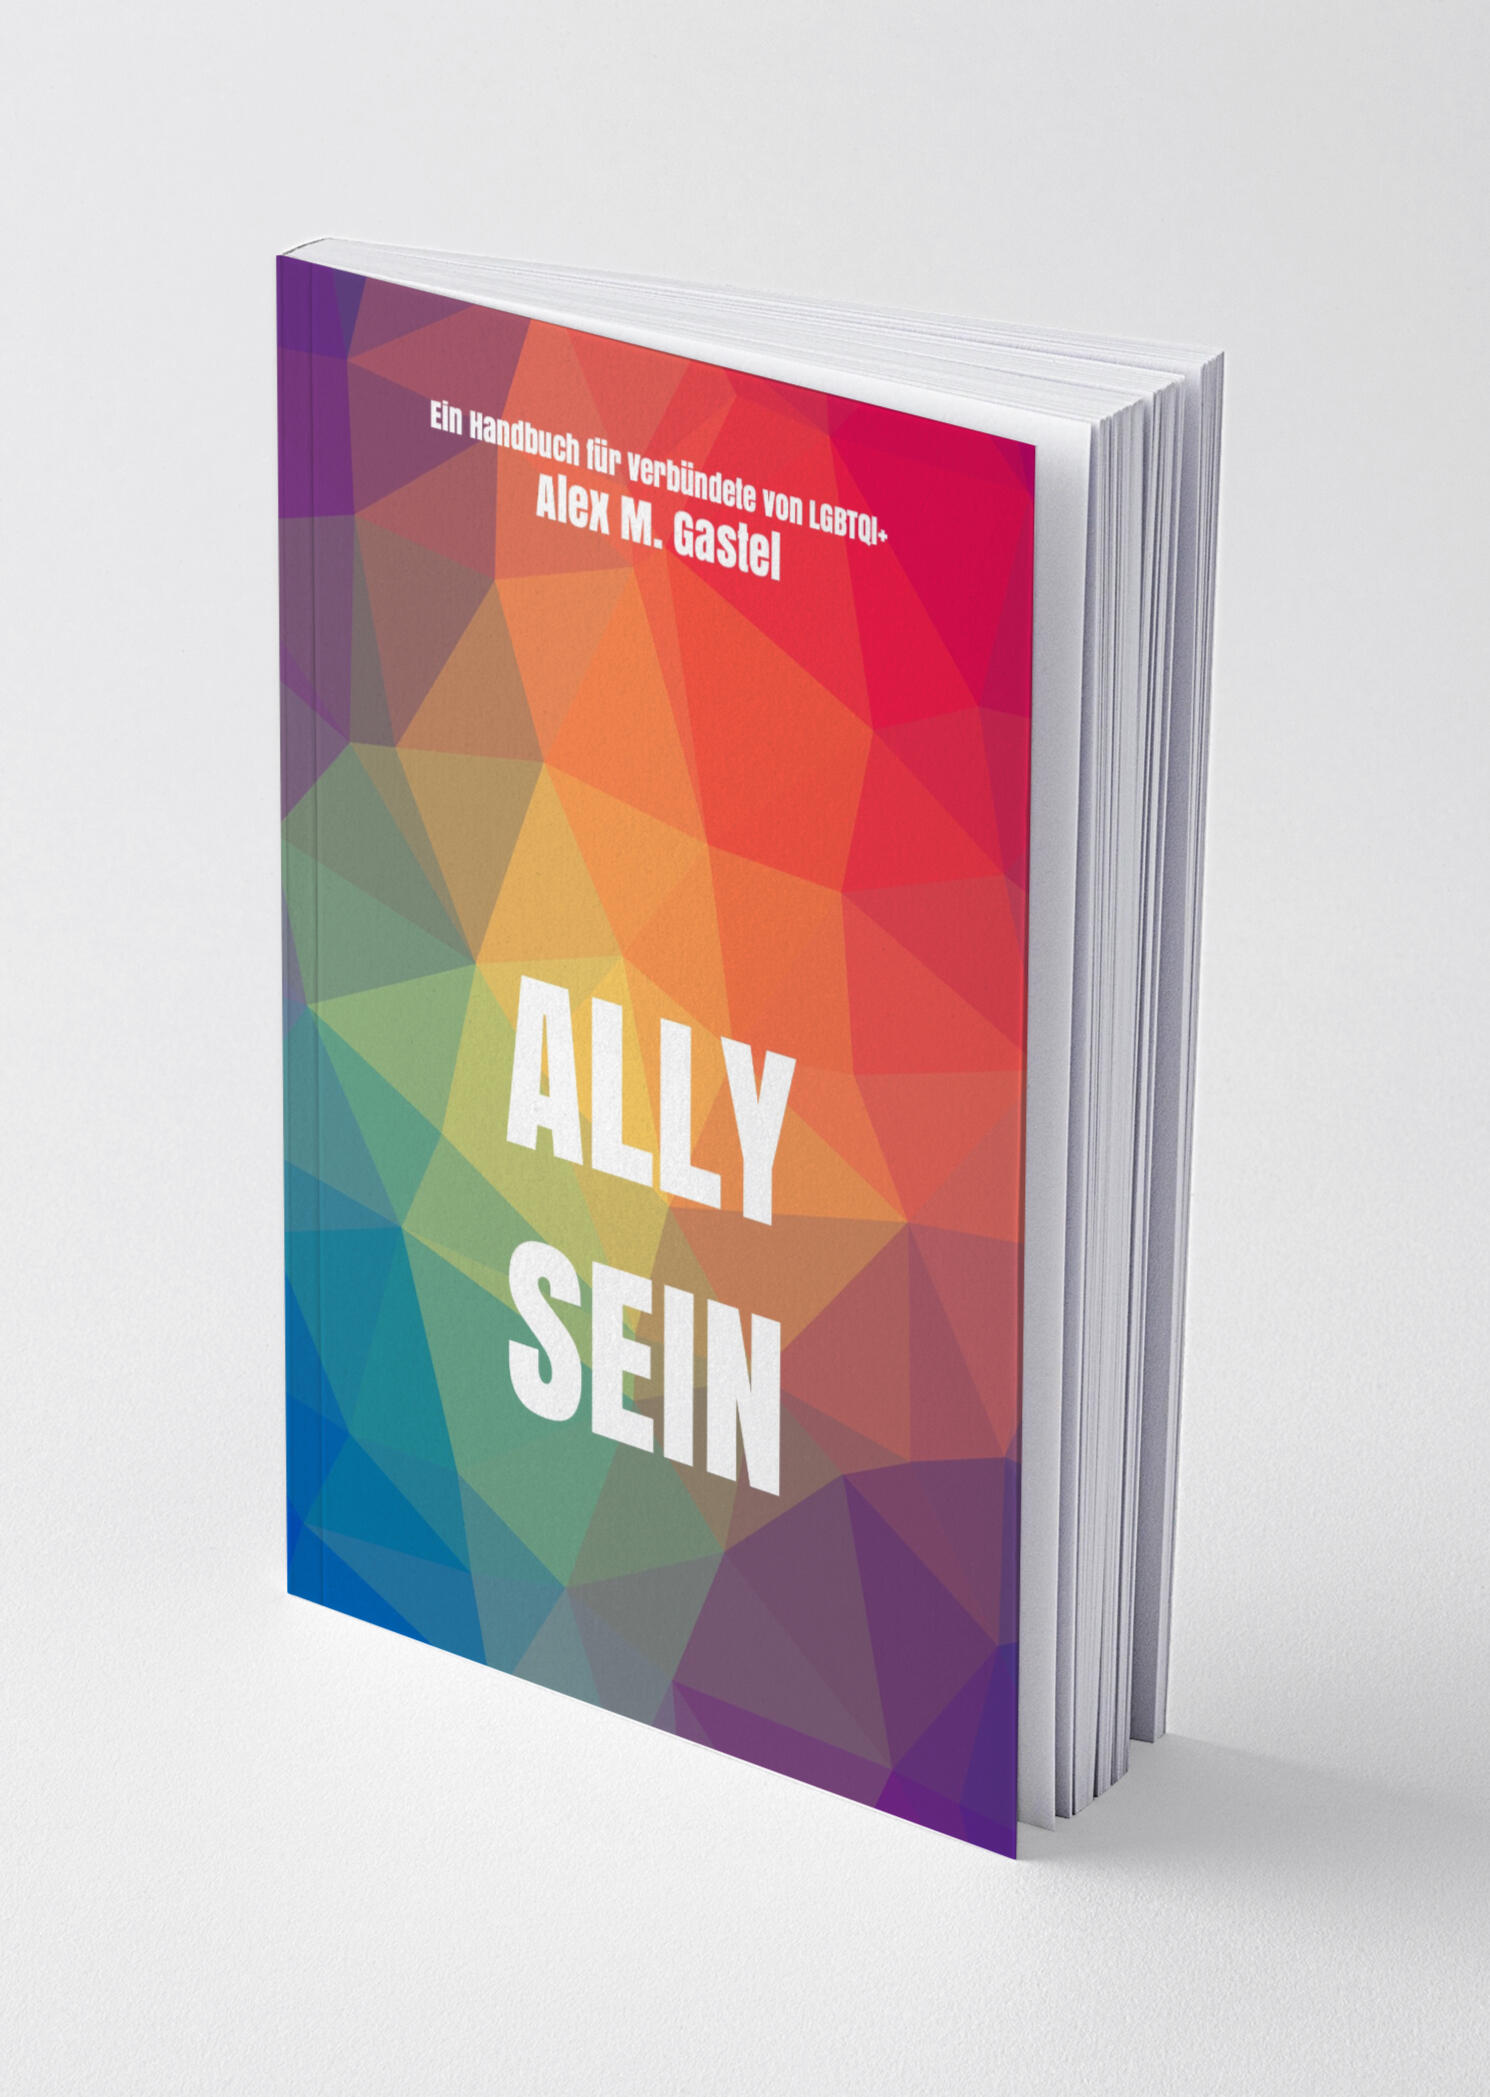 Ein Bild des Sachbuchs "Ally sein". Es handelt sich um ein Mockup des Buches, nicht um eine finale Version. Das Titelbild zeigt eine Gruppe queerer Menschen auf einer Pride Parade. Sie lachen, tanzen und schwingen Pride Flaggen. Der Titel ist: Ally Sein.